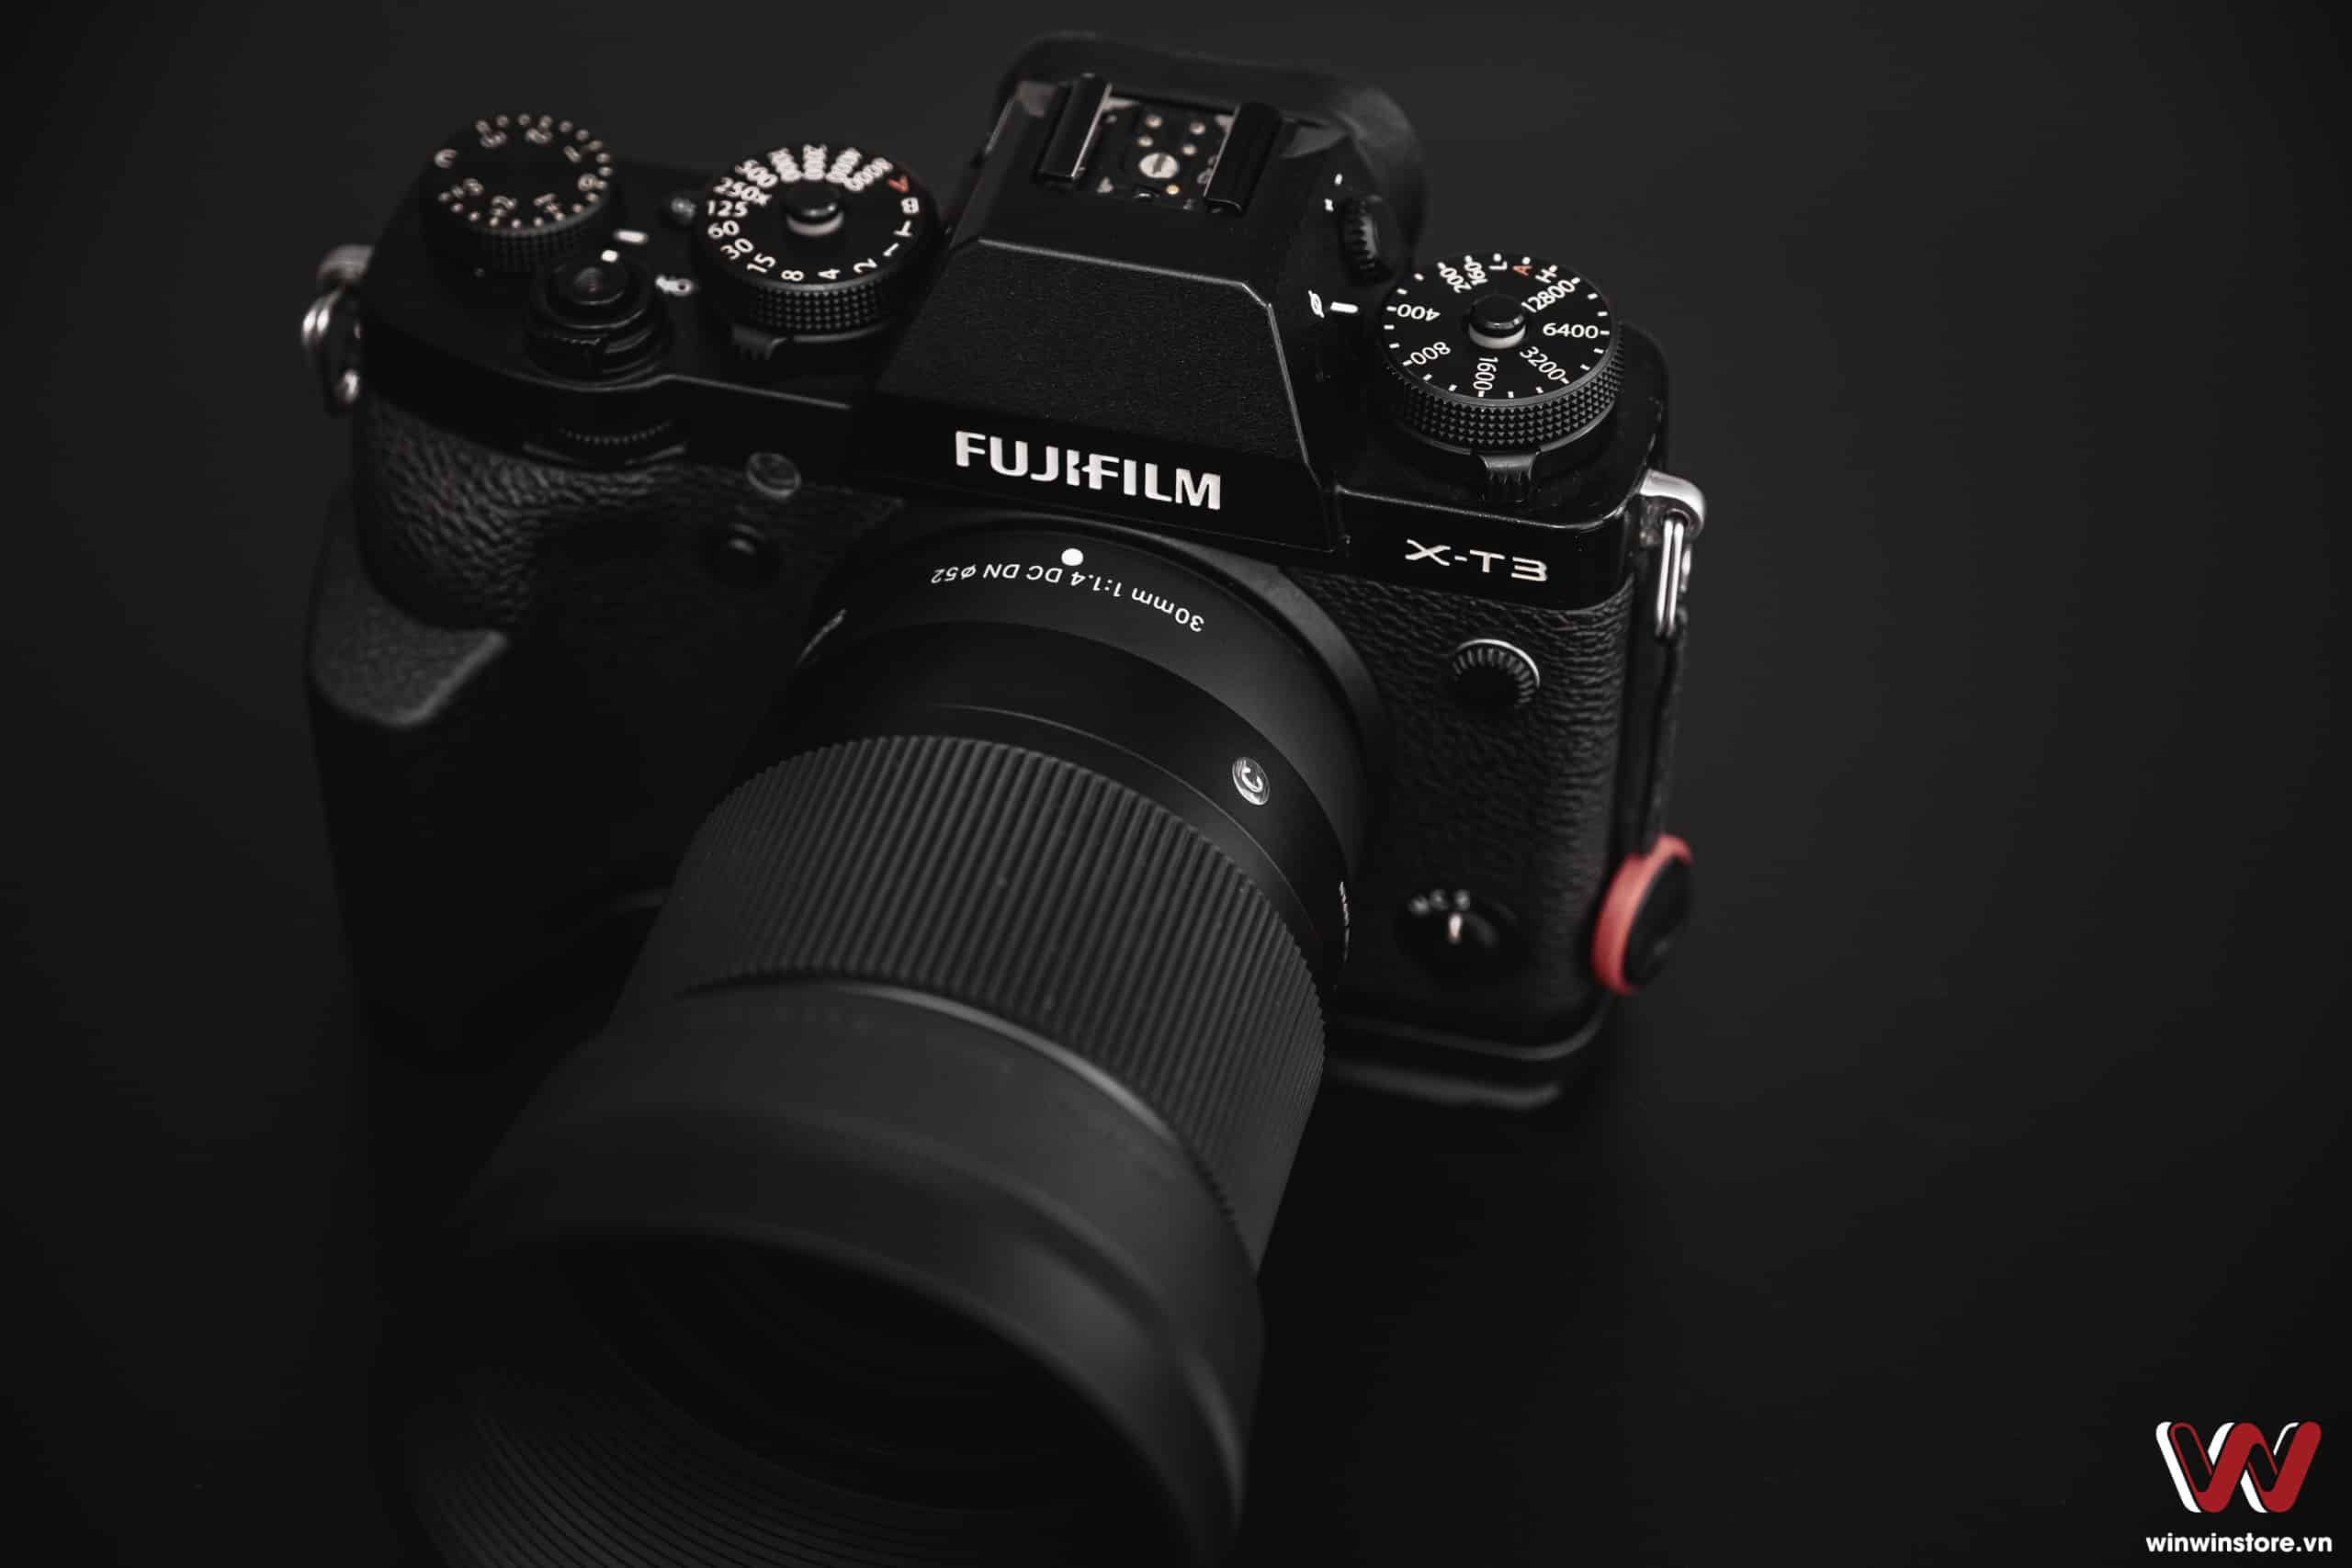 Trên tay ống kính Sigma 30mm F1.4 DC DN Contemporary cho Fujifilm: Hoàn thiện tốt và giá cũng tốt nữa